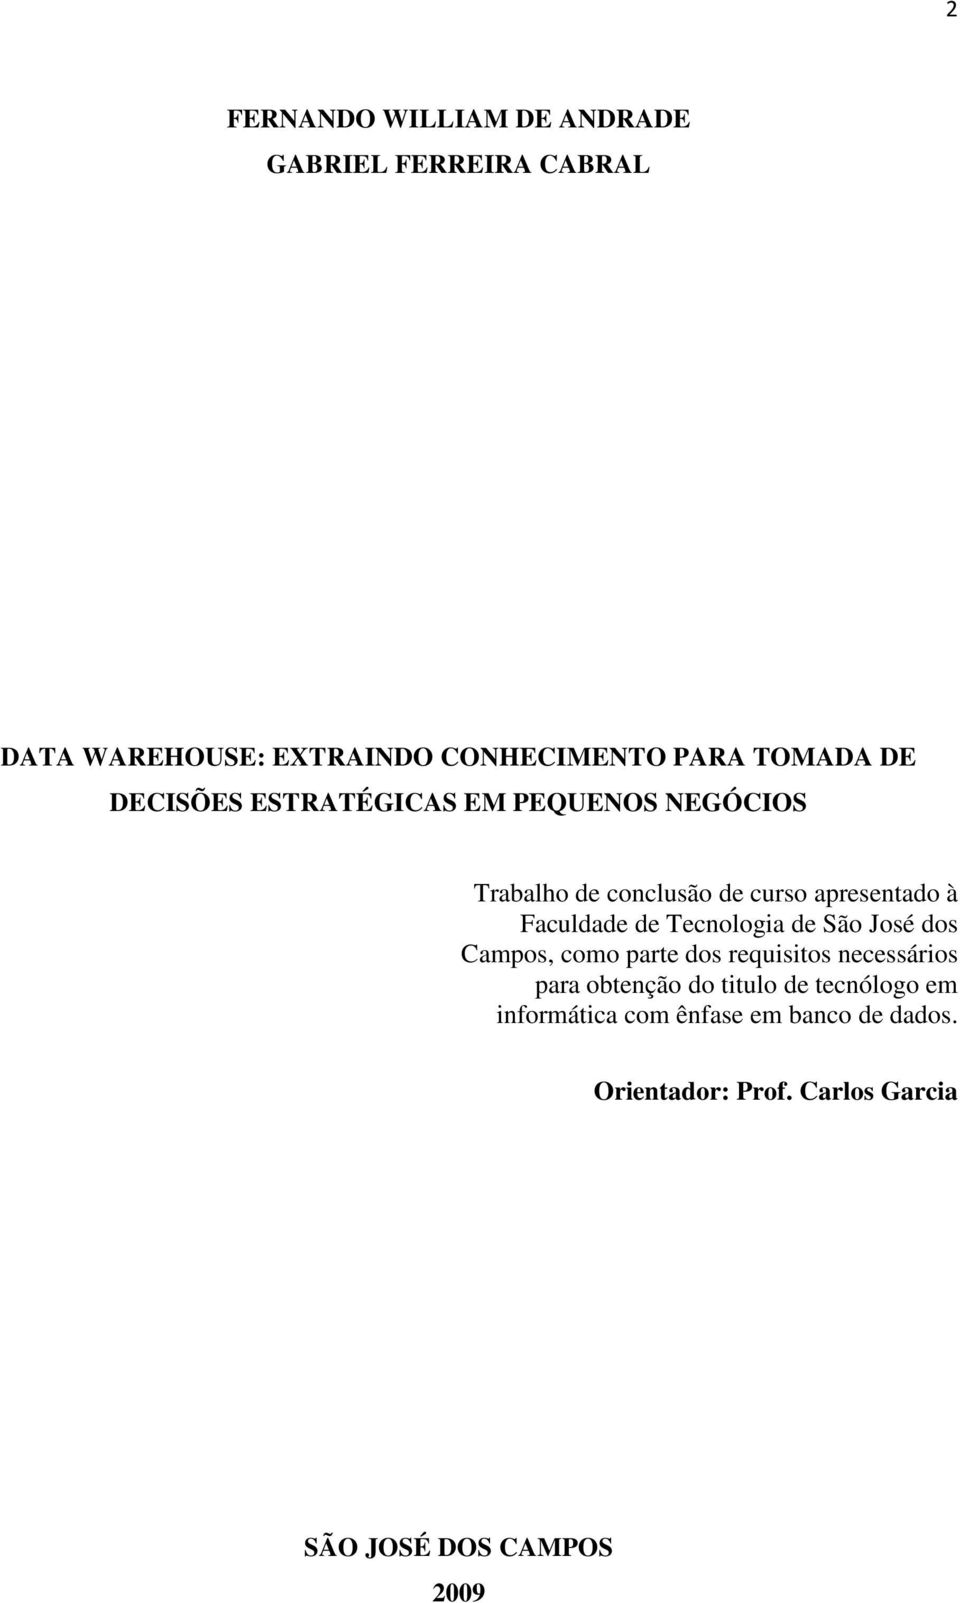 Tecnologia de São José dos Campos, como parte dos requisitos necessários para obtenção do titulo de